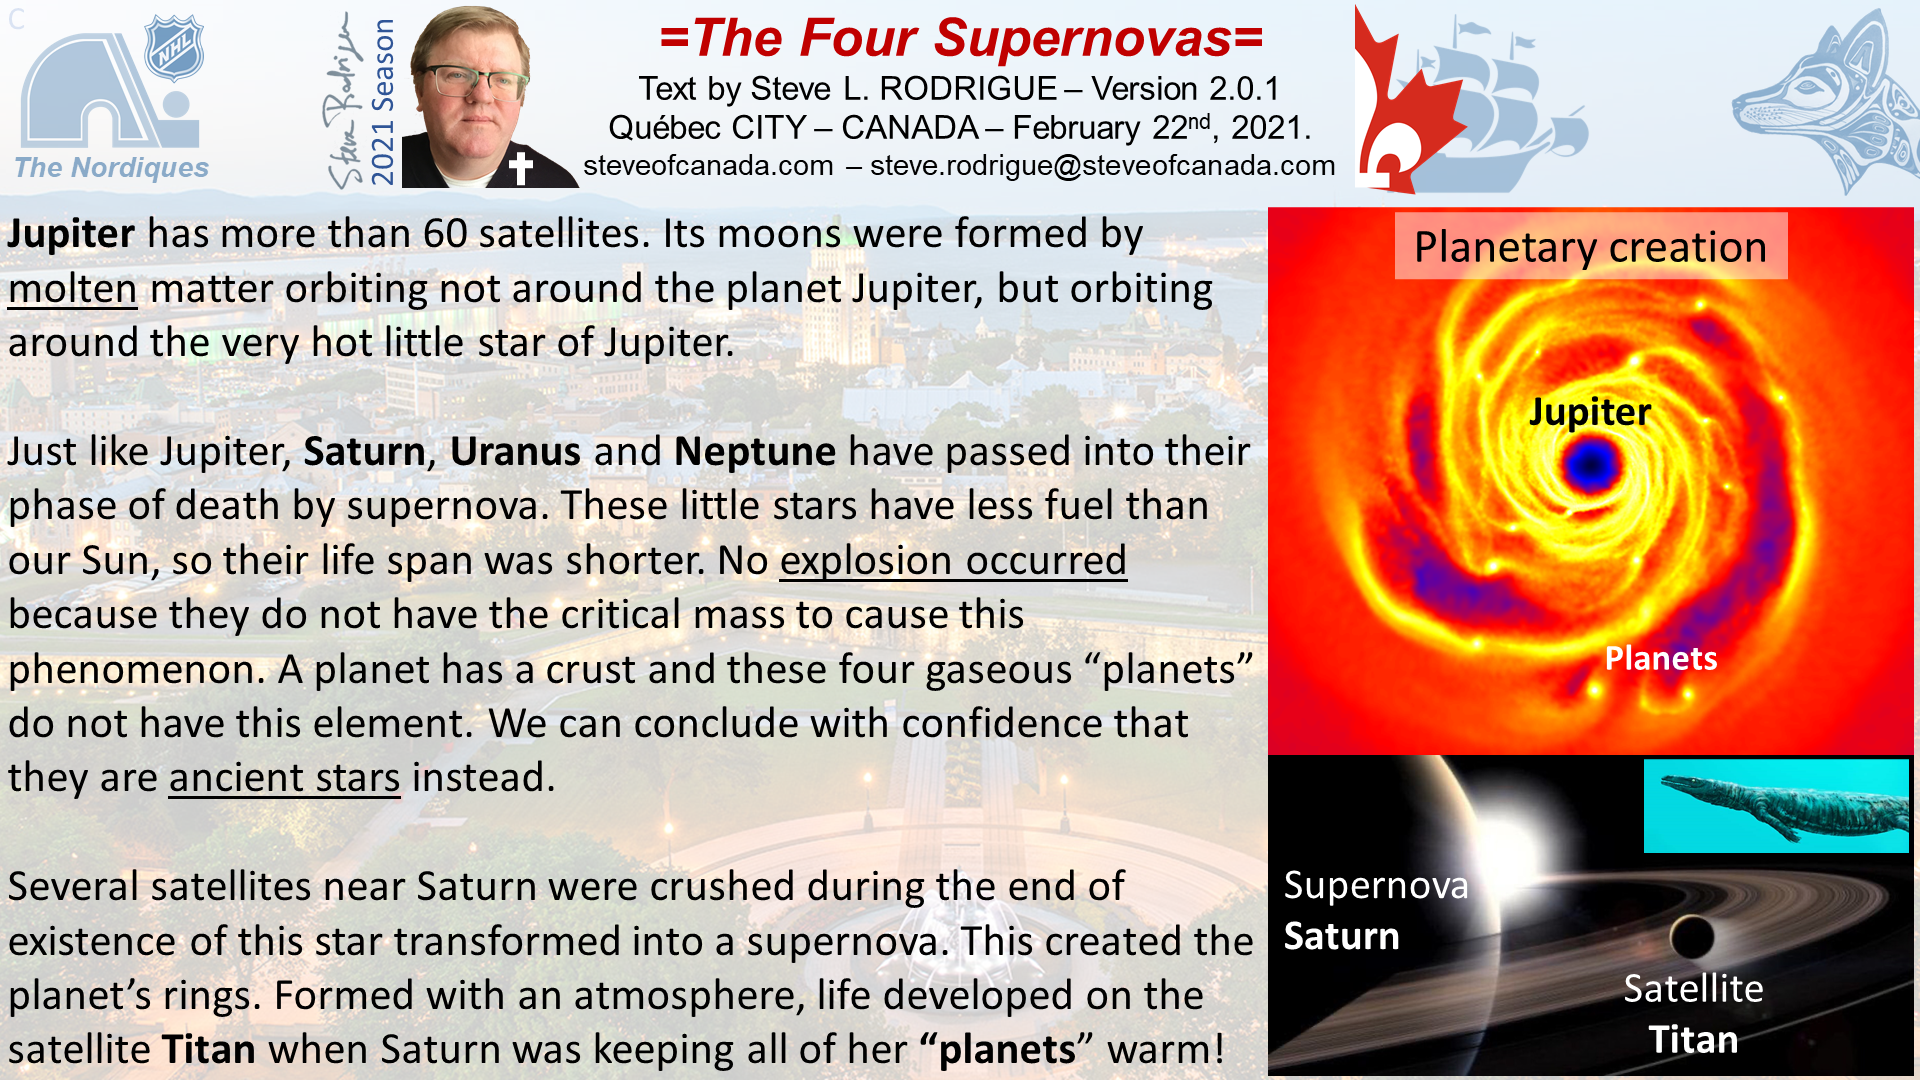 The nearby supernovas